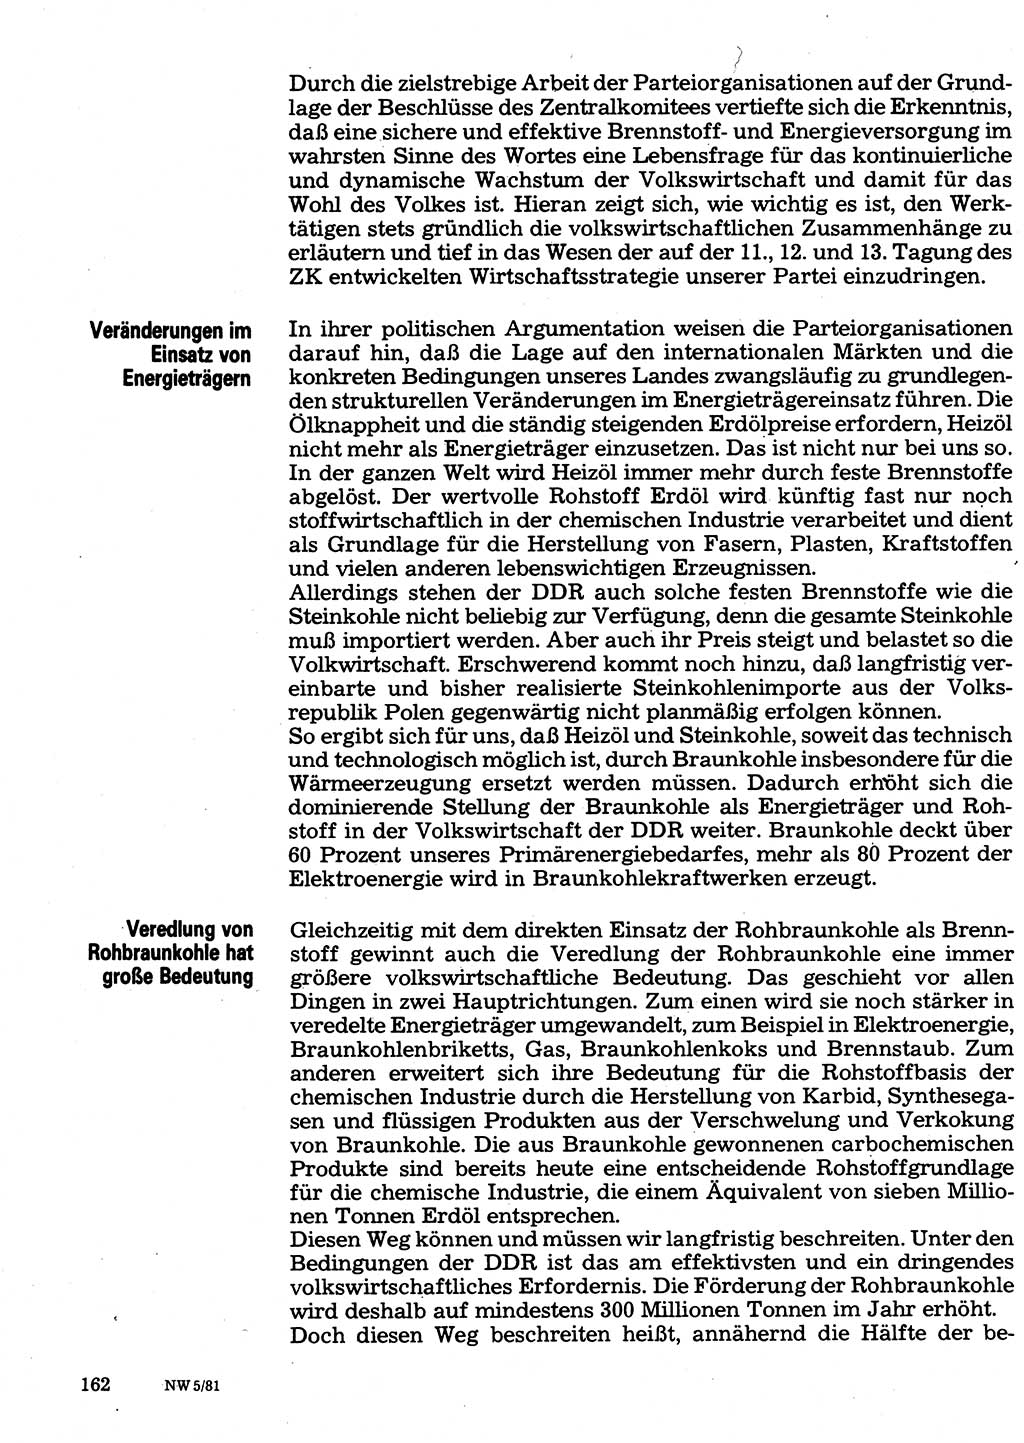 Neuer Weg (NW), Organ des Zentralkomitees (ZK) der SED (Sozialistische Einheitspartei Deutschlands) für Fragen des Parteilebens, 36. Jahrgang [Deutsche Demokratische Republik (DDR)] 1981, Seite 162 (NW ZK SED DDR 1981, S. 162)